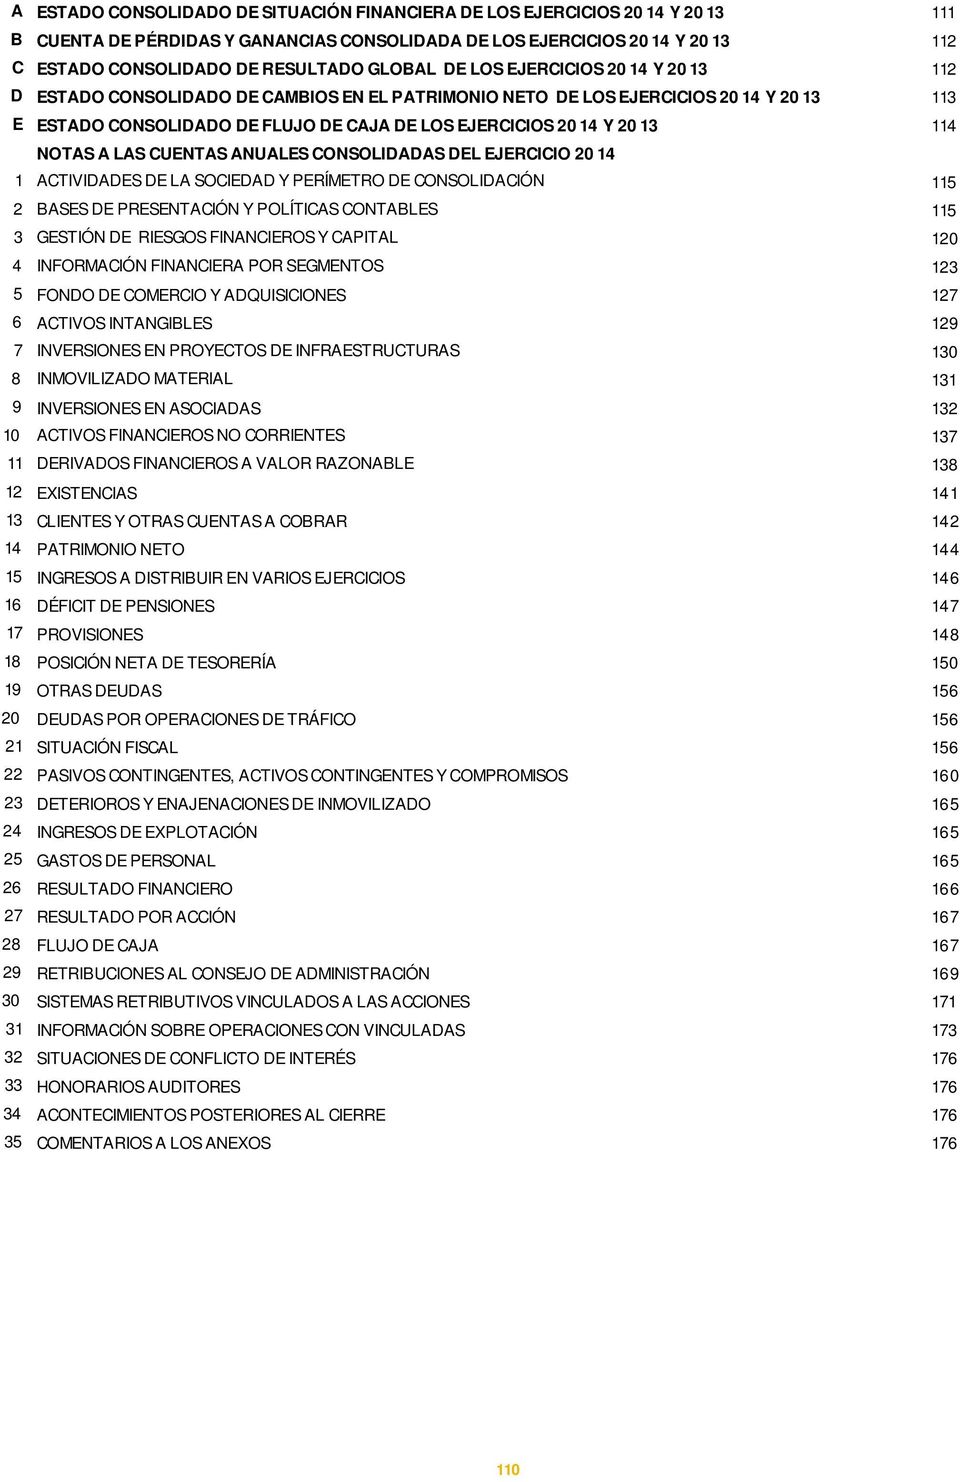 A LAS CUENTAS ANUALES CONSOLIDADAS DEL EJERCICIO 2014 1 ACTIVIDADES DE LA SOCIEDAD Y PERÍMETRO DE CONSOLIDACIÓN 115 2 BASES DE PRESENTACIÓN Y POLÍTICAS CONTABLES 115 3 GESTIÓN DE RIESGOS FINANCIEROS